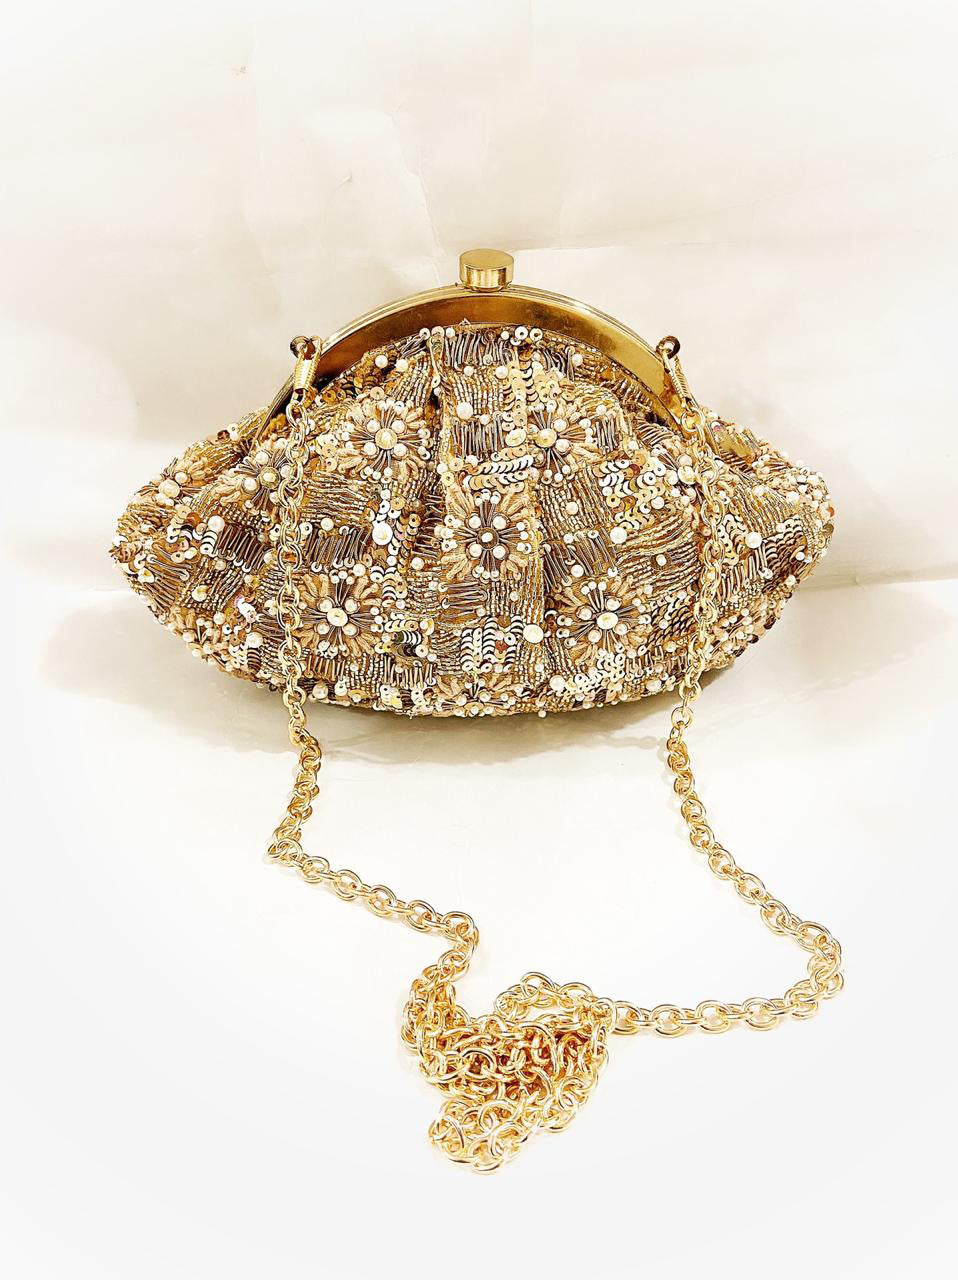 Handbag In Golden Colour for Parties - Simaaya